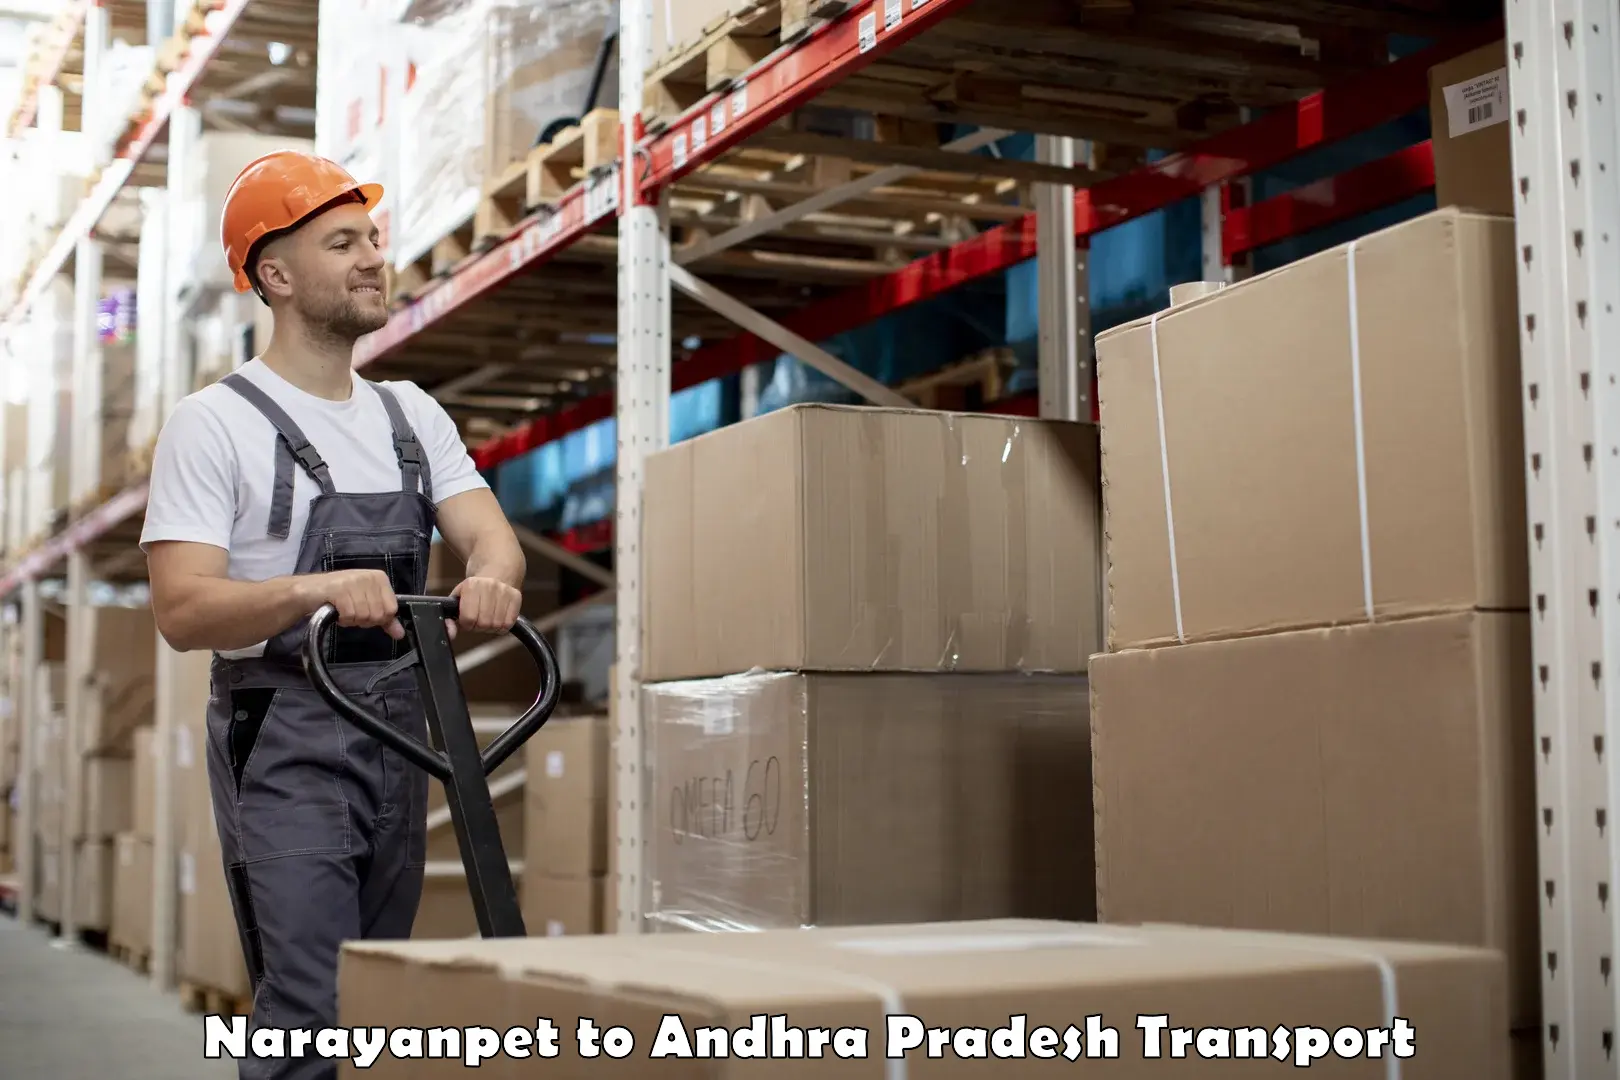 Bike shipping service Narayanpet to Sri City